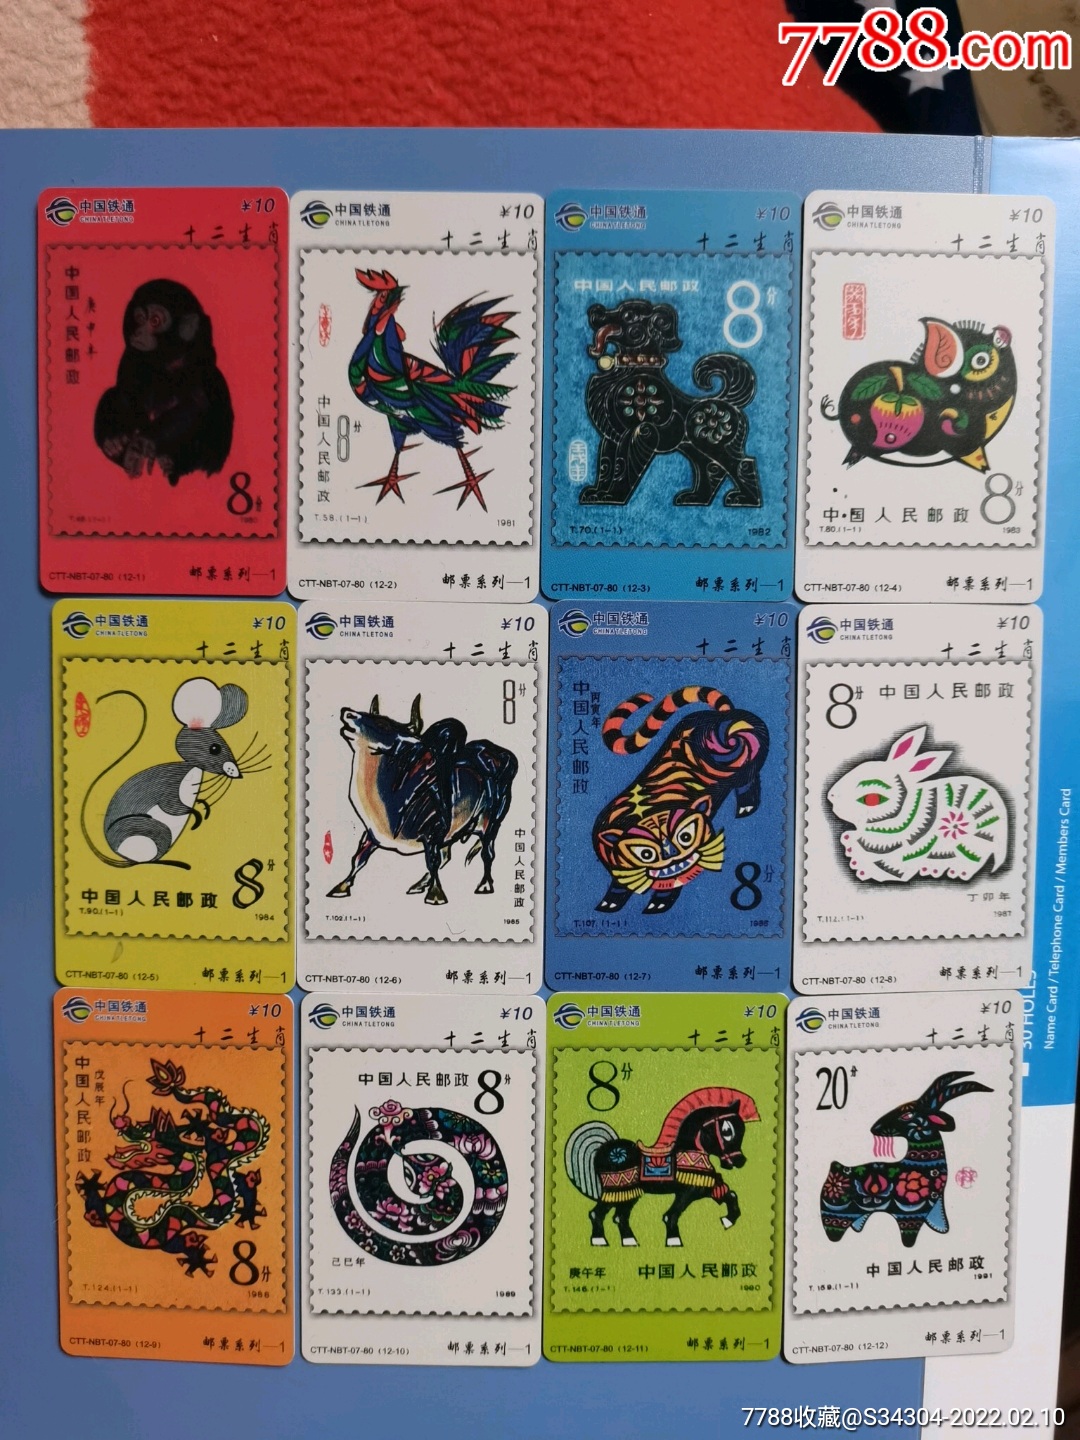 台湾邮票图片12生肖图片